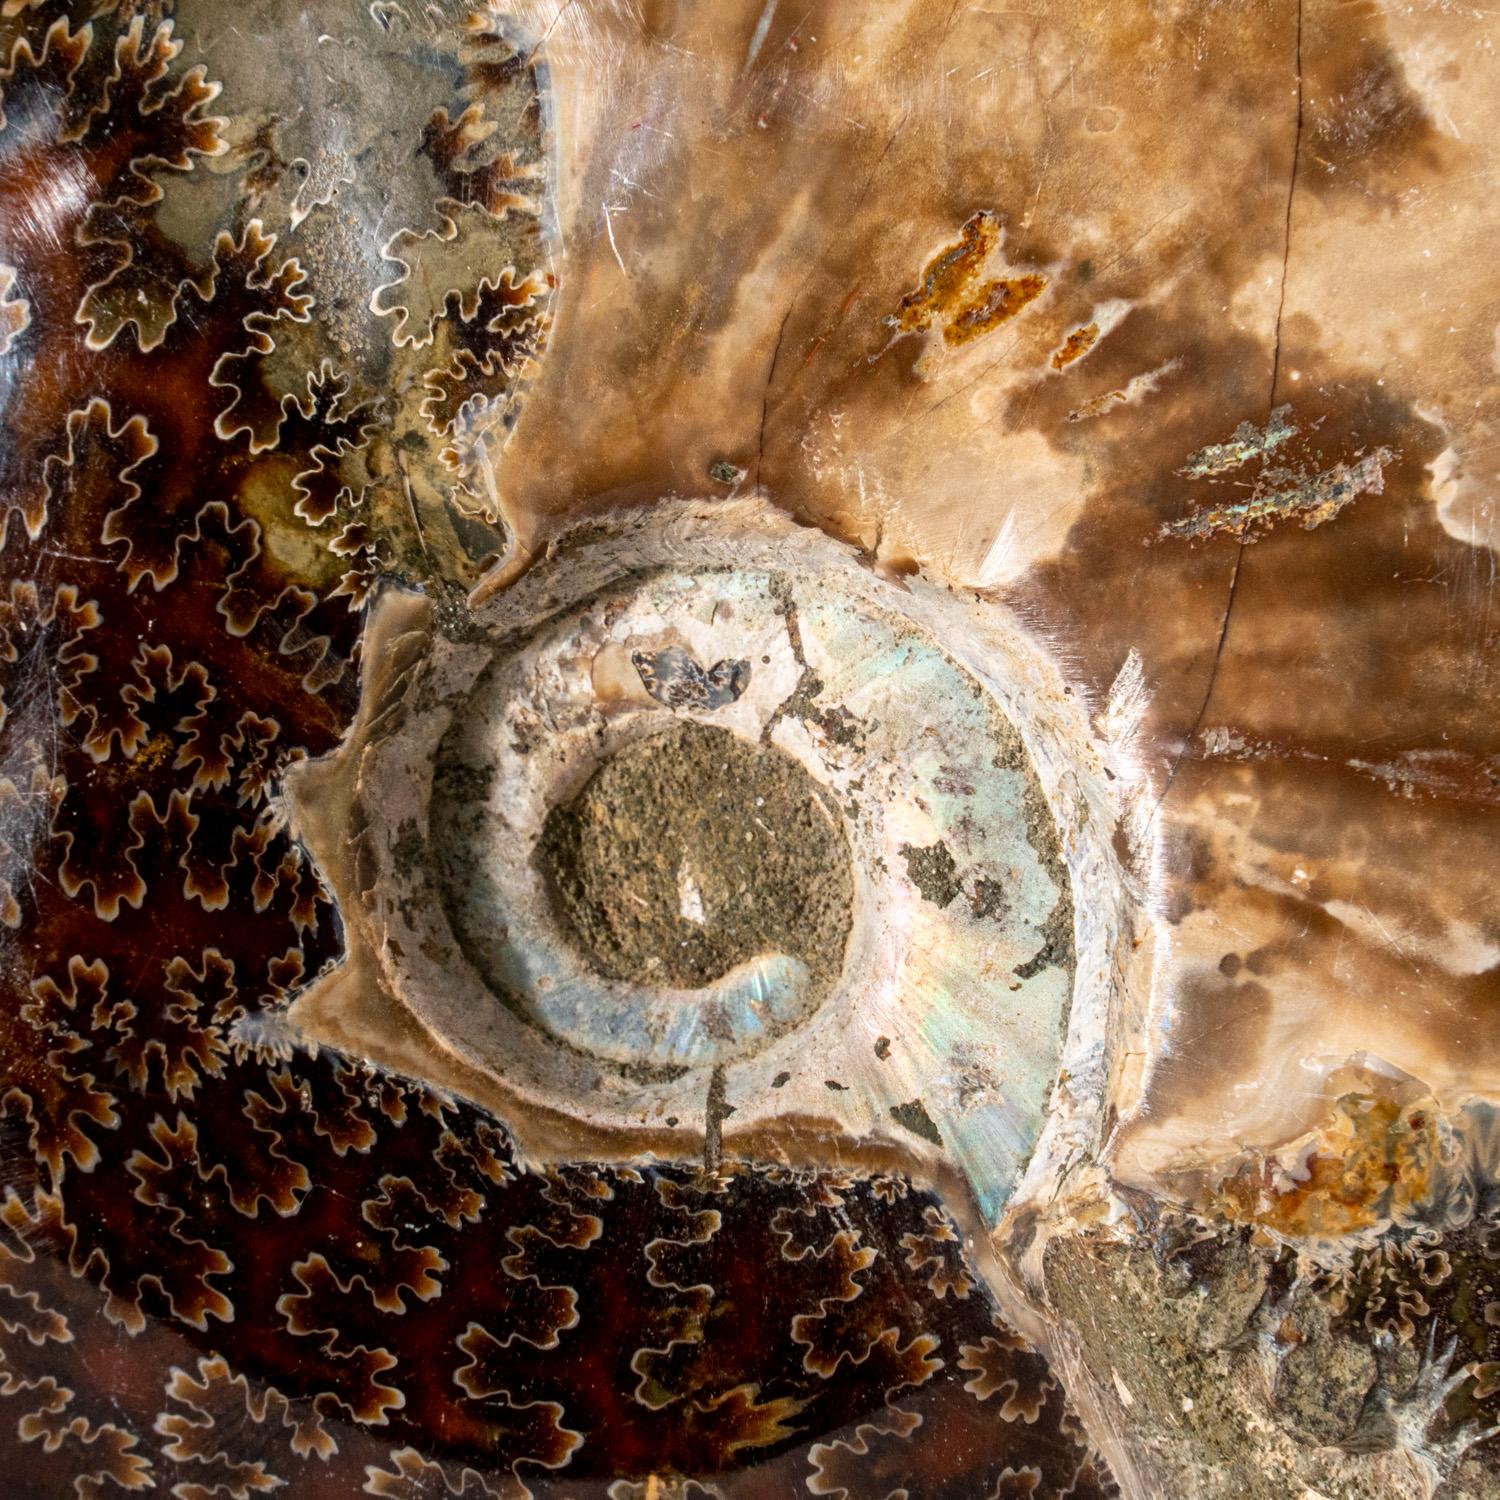 Eine schöne, versteinerte und verkalkte Ammonitenschale mit irisierendem, opalisierendem Schimmer, der einen Hauch von leuchtenden Rot- und Gelbtönen aufweist. Dieses Exemplar zeigt mehrere vollständige Ammoniten in einer Clusterform, die jeweils